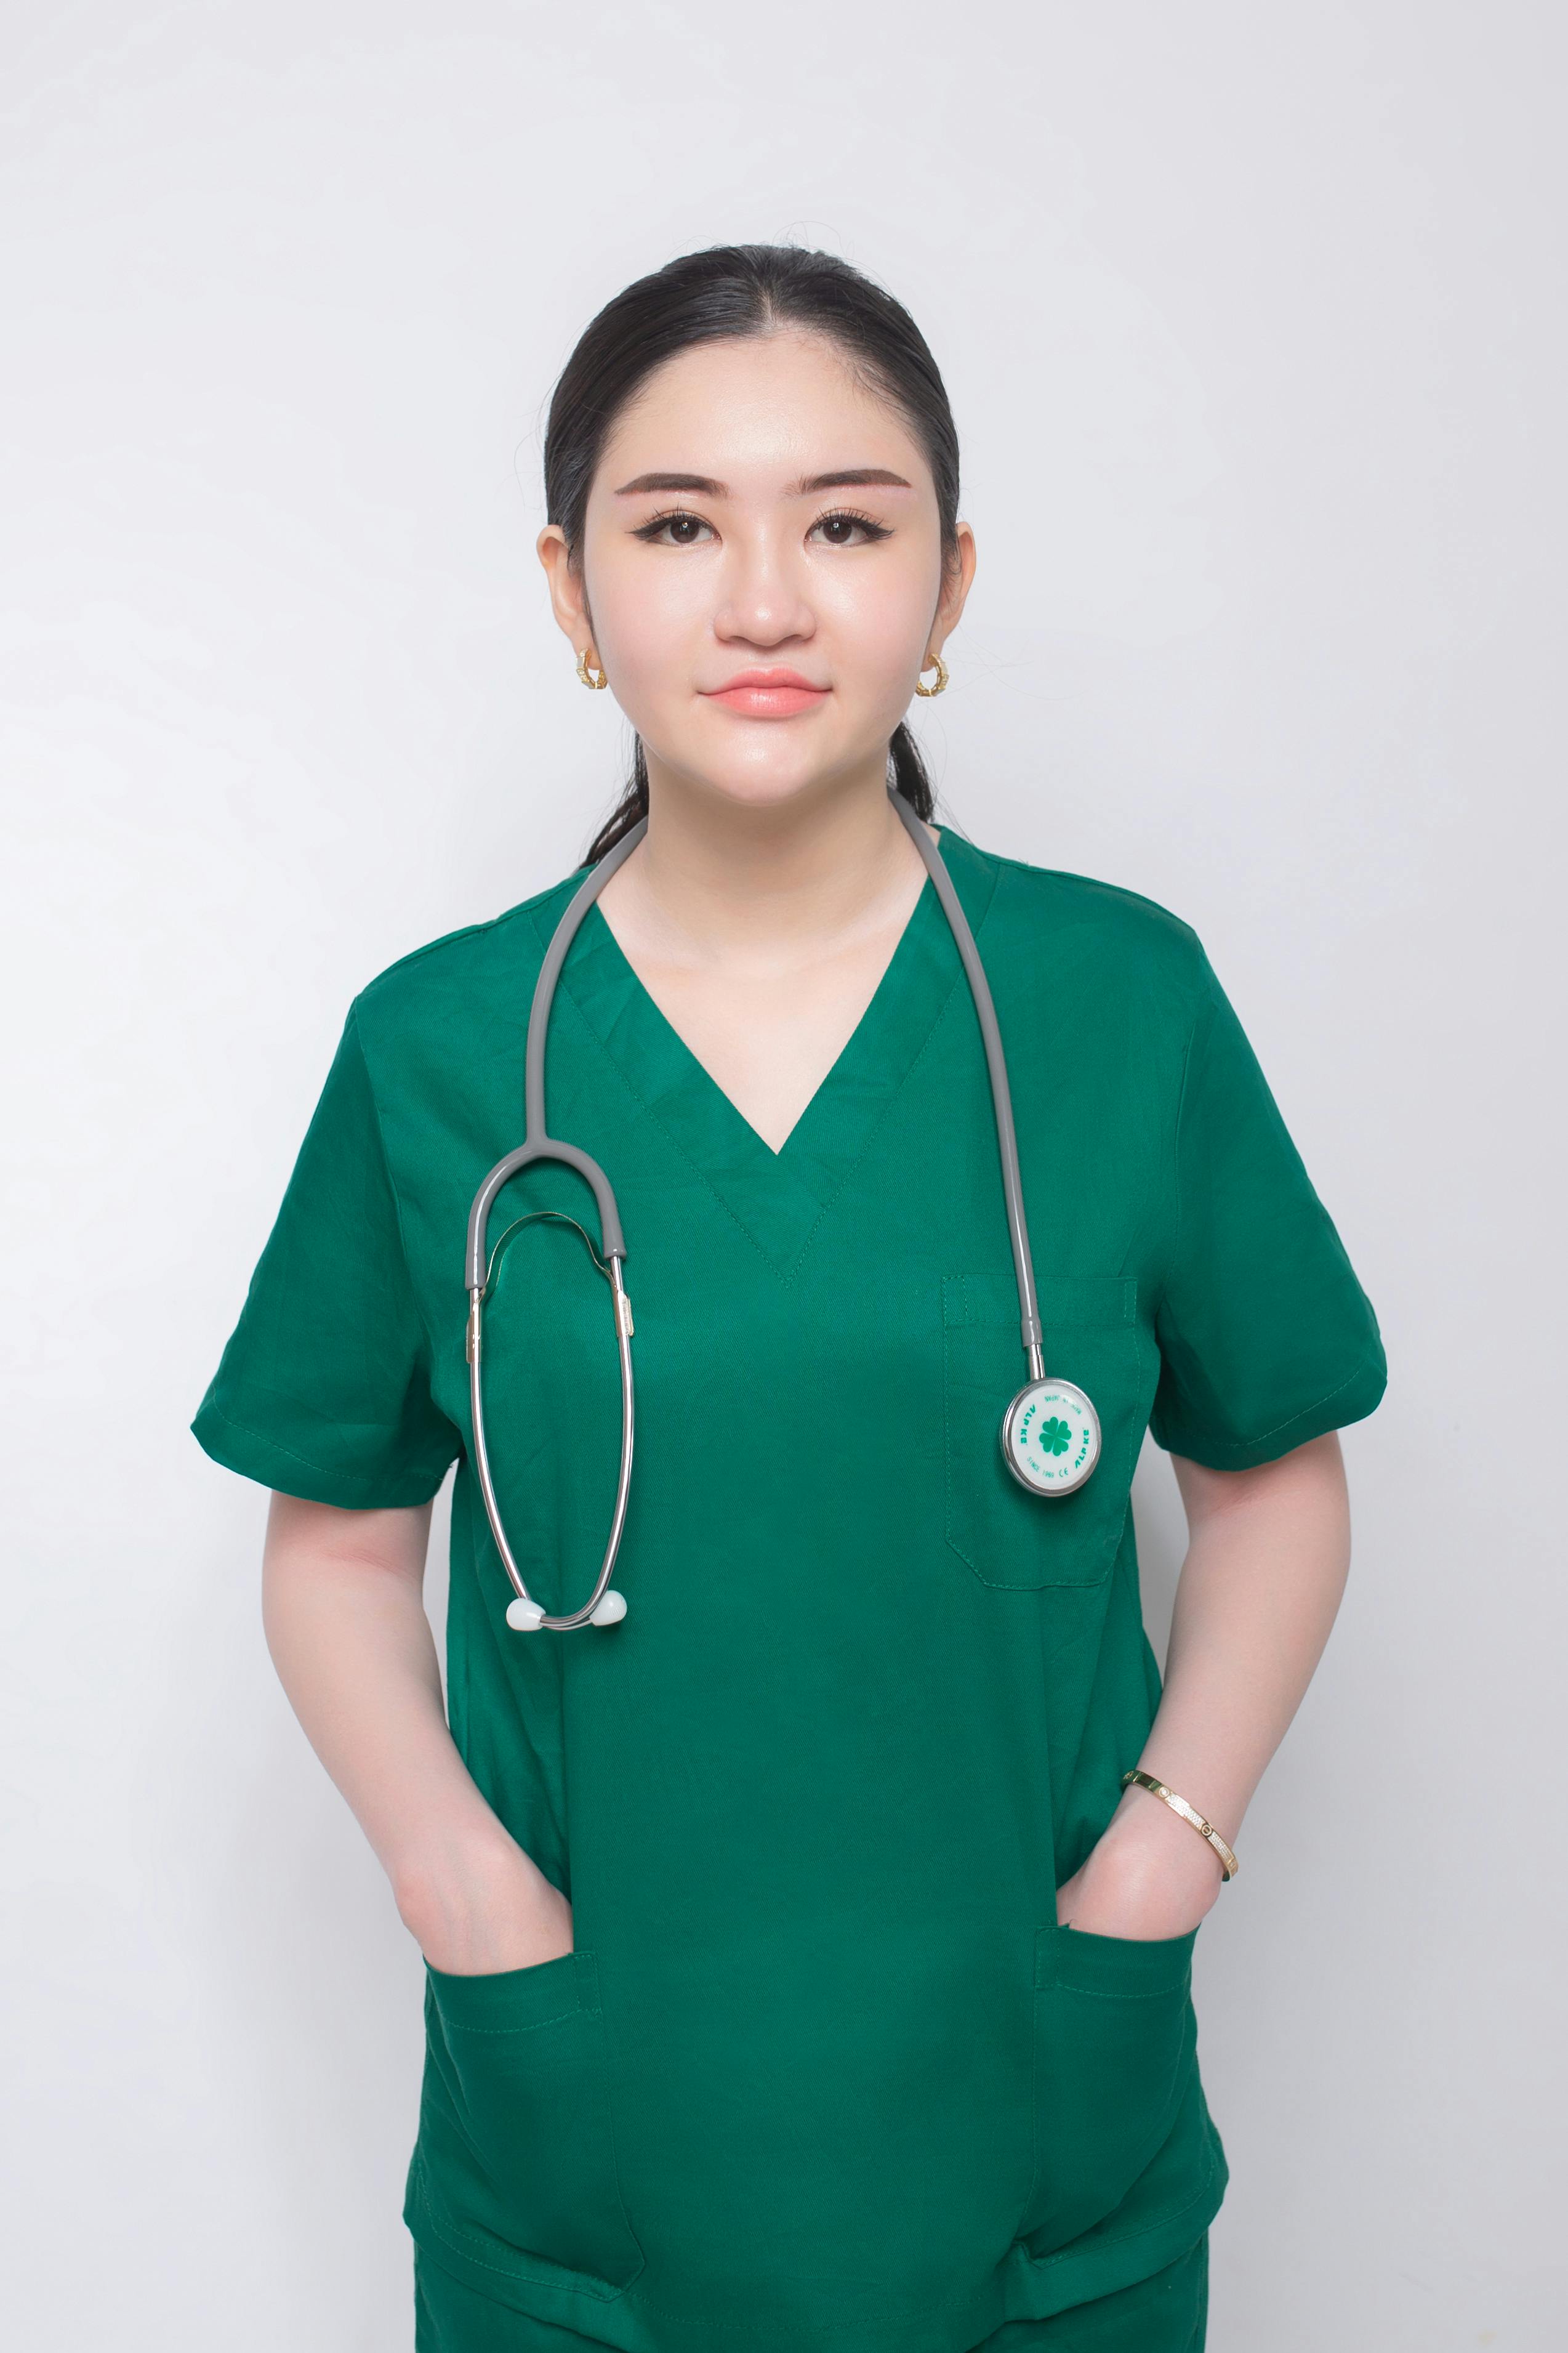 A medical professional | Source: Pexels